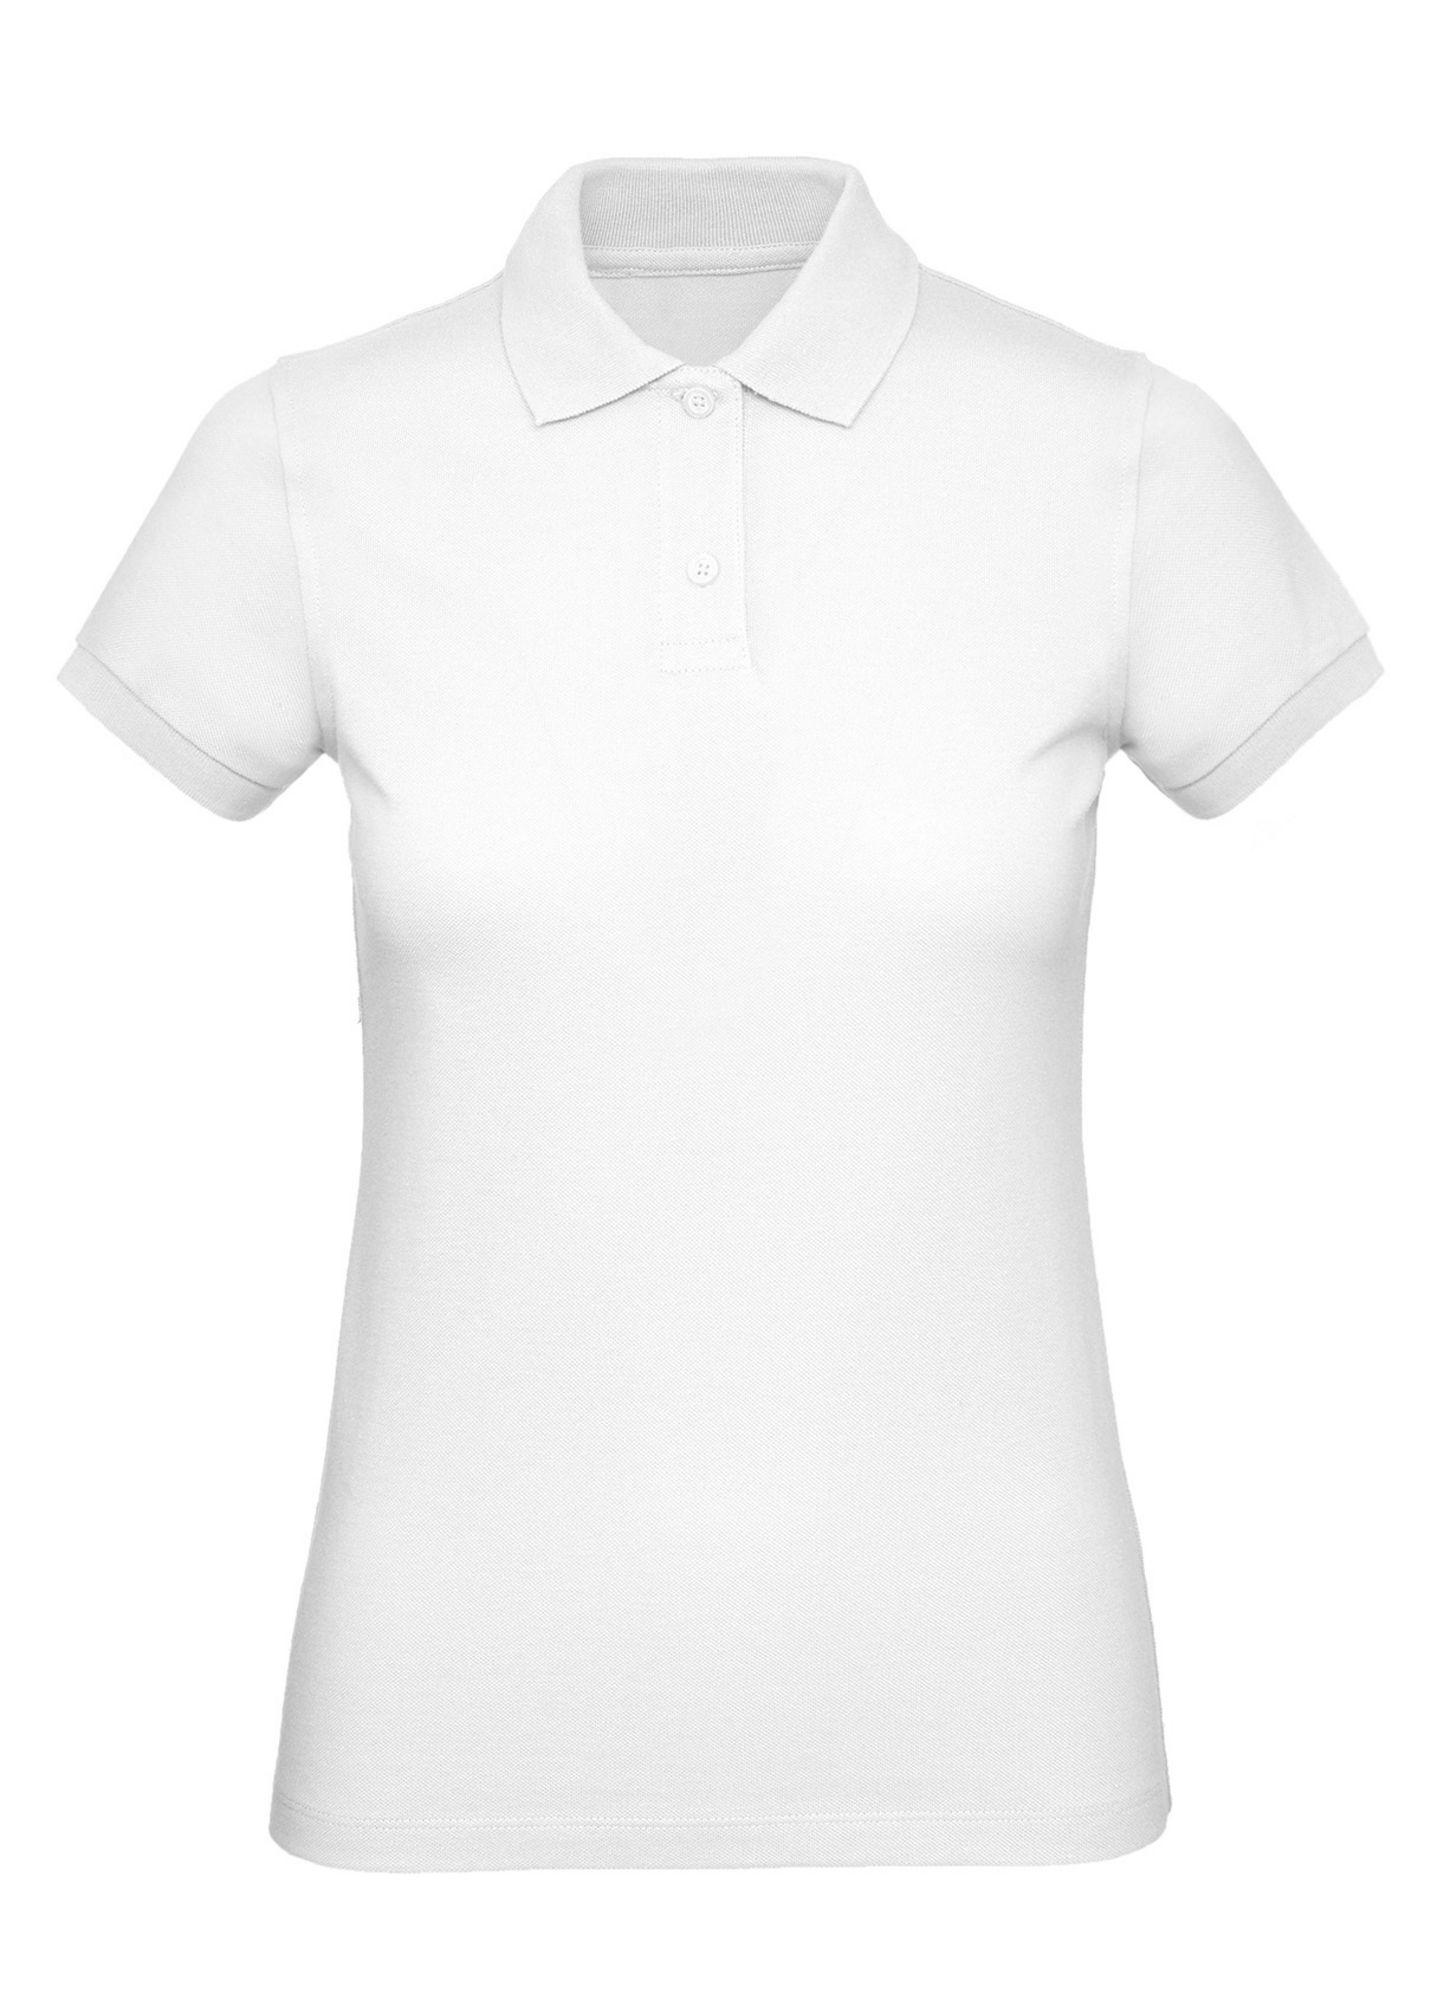 Рубашка поло женская Inspire белая, размер S